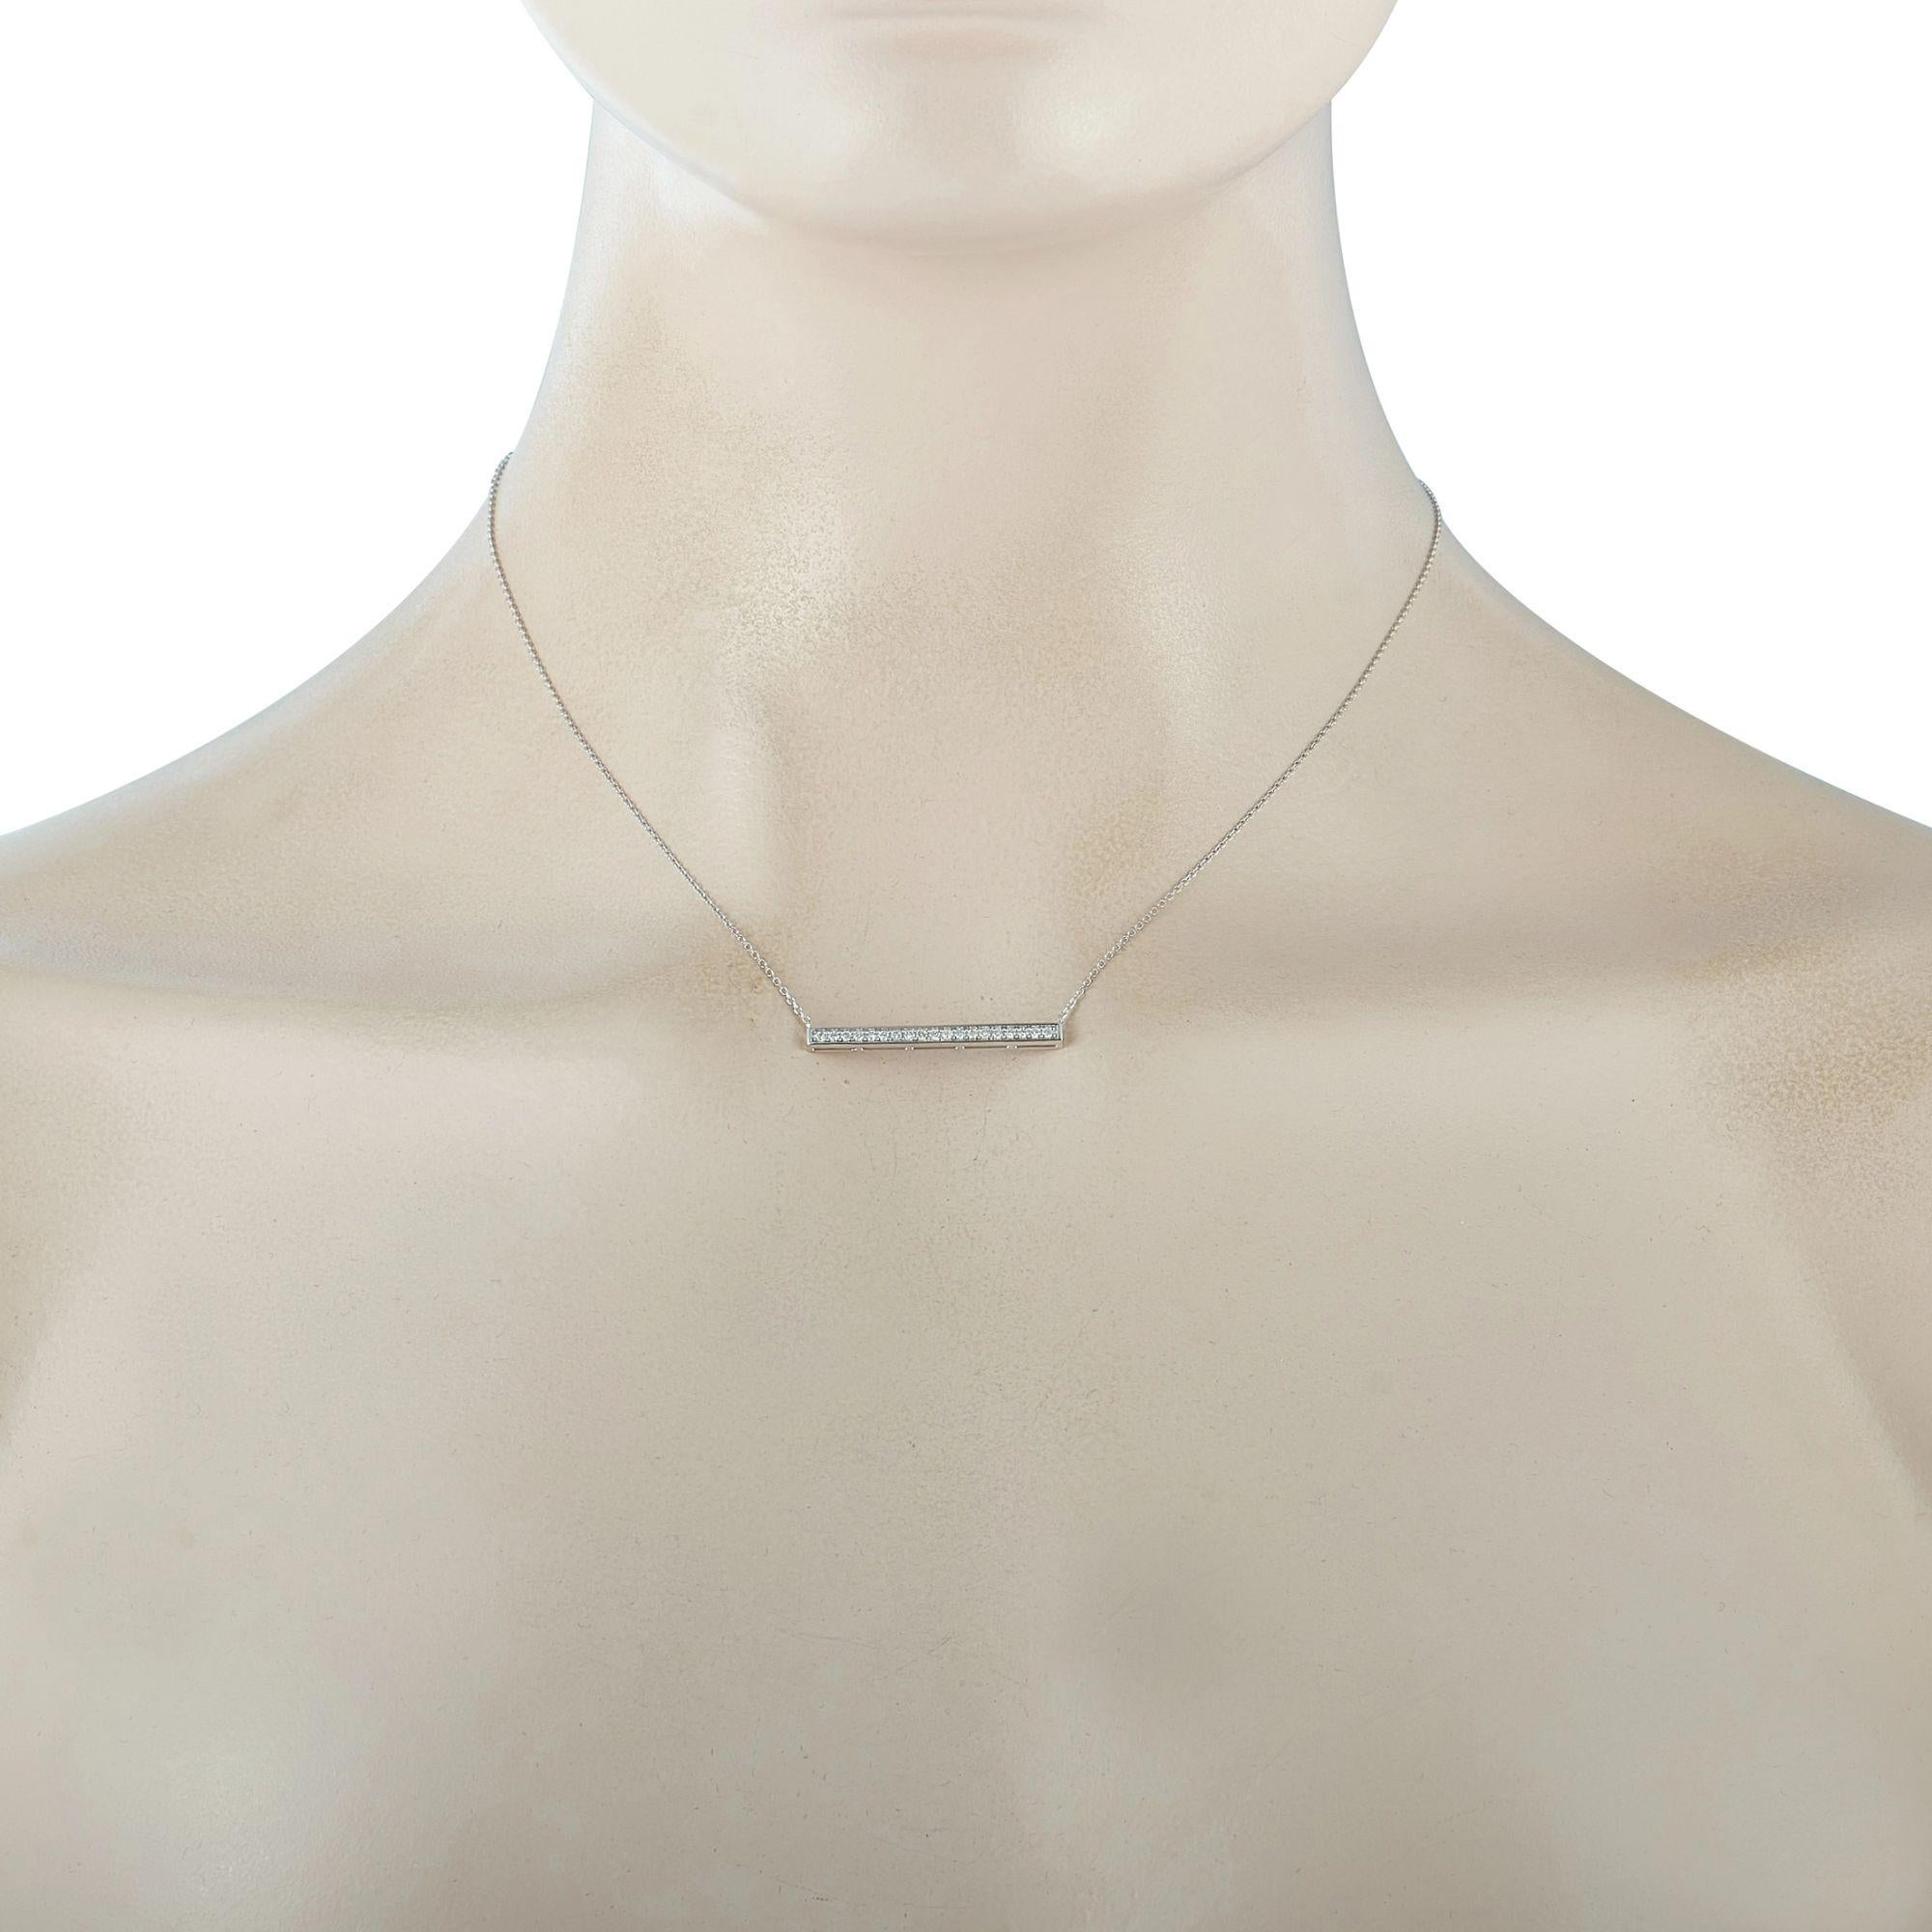 Diese LB Exclusive-Halskette ist aus 14-karätigem Weißgold gefertigt und mit Diamanten von 0,25 Karat verziert. Die Halskette wiegt 2,1 Gramm und verfügt über eine 15-Zoll-Kette und einen Anhänger mit einer Länge von 0,13 Zoll und einer Breite von